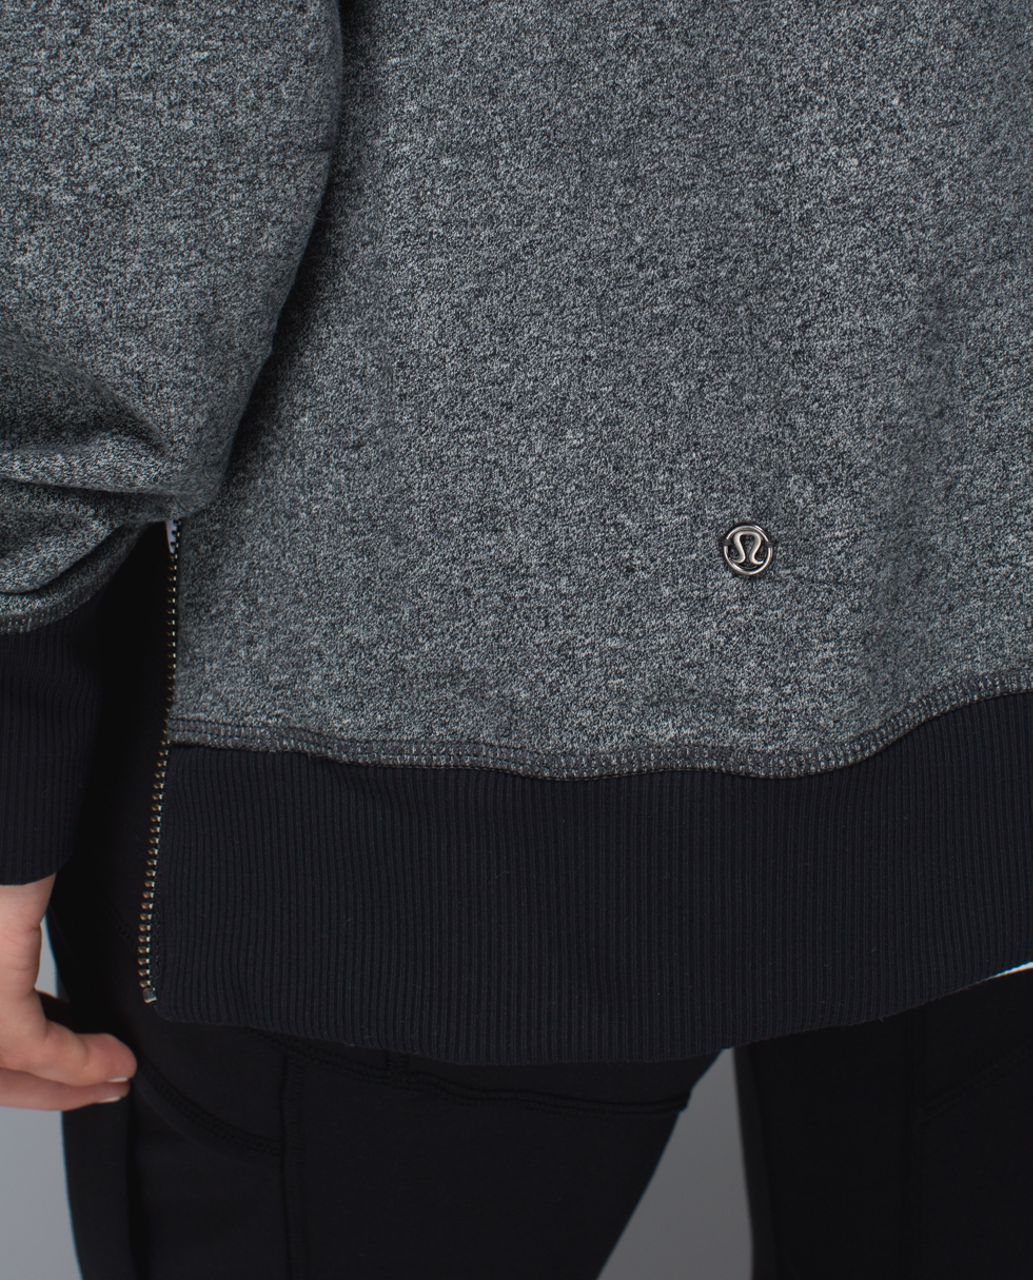 Lululemon Om & Roam Pullover Hoodie Sweatshirt Side Zippers Women's Size 2  Gray 